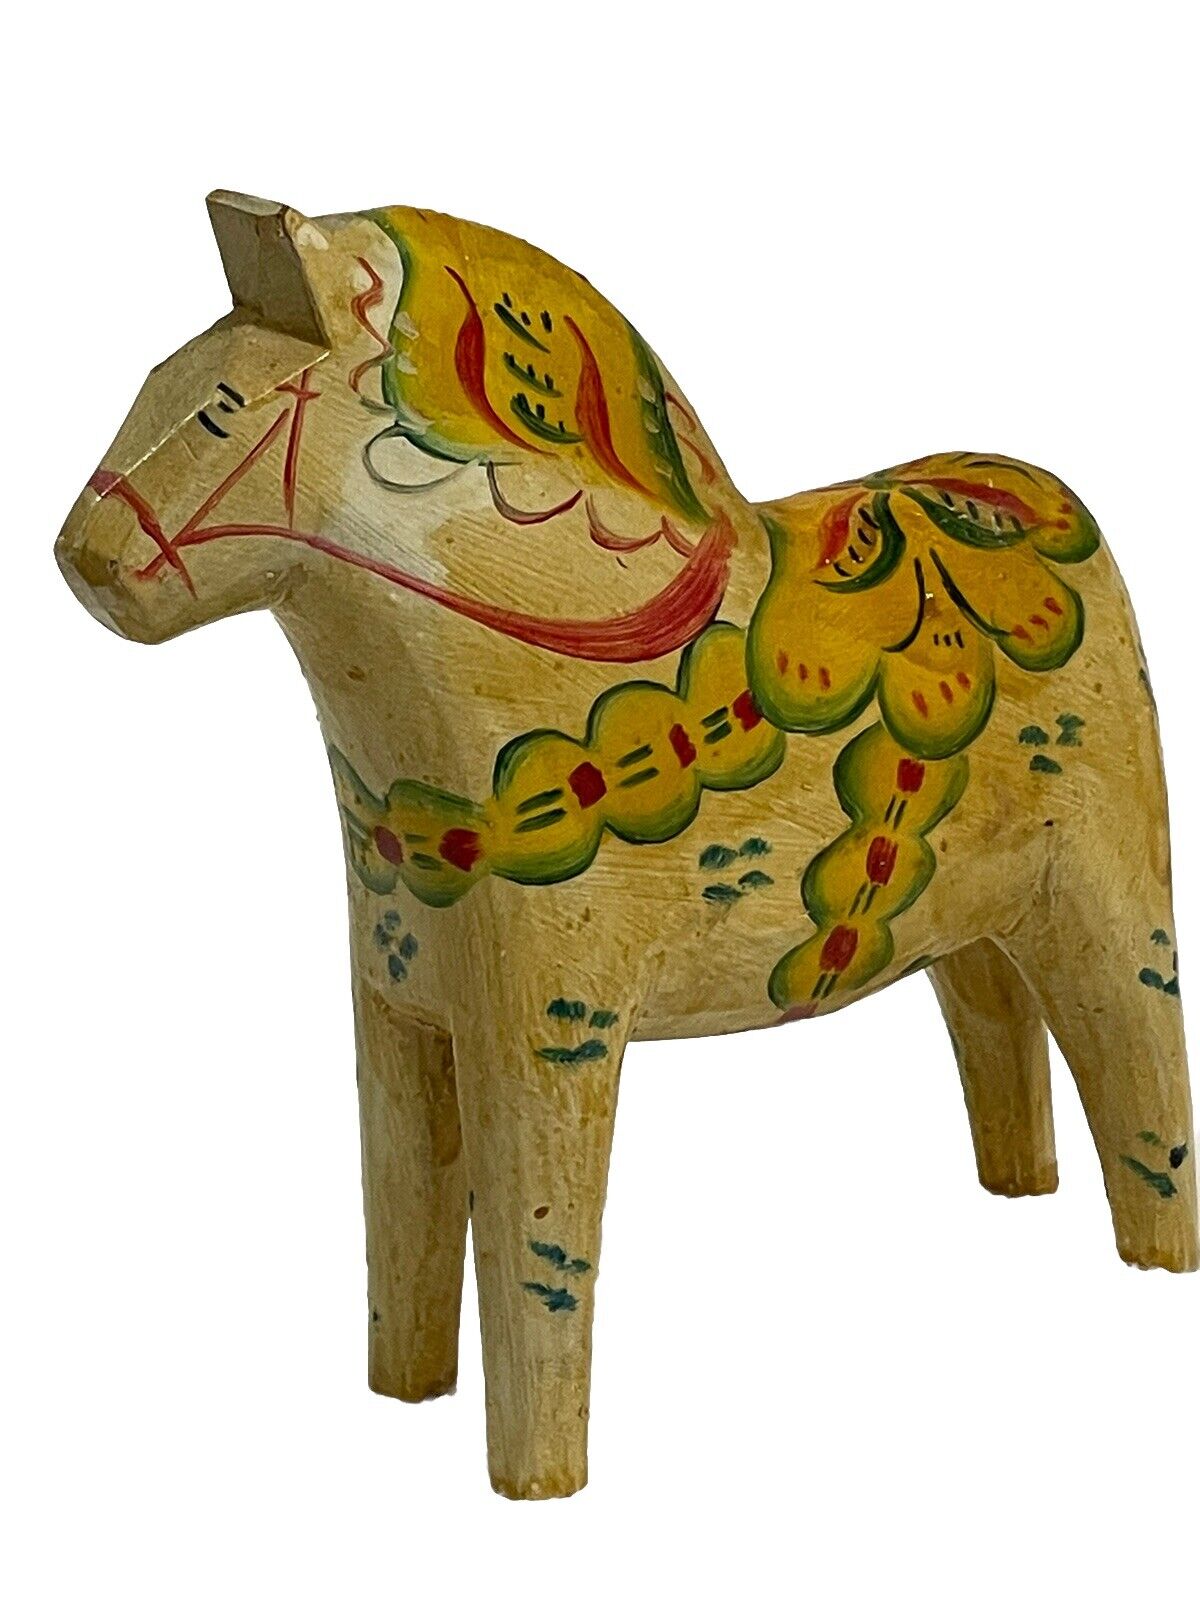 Vintage Wooden Swedish Dala Horse  “5” Stockholm Sweden 1949